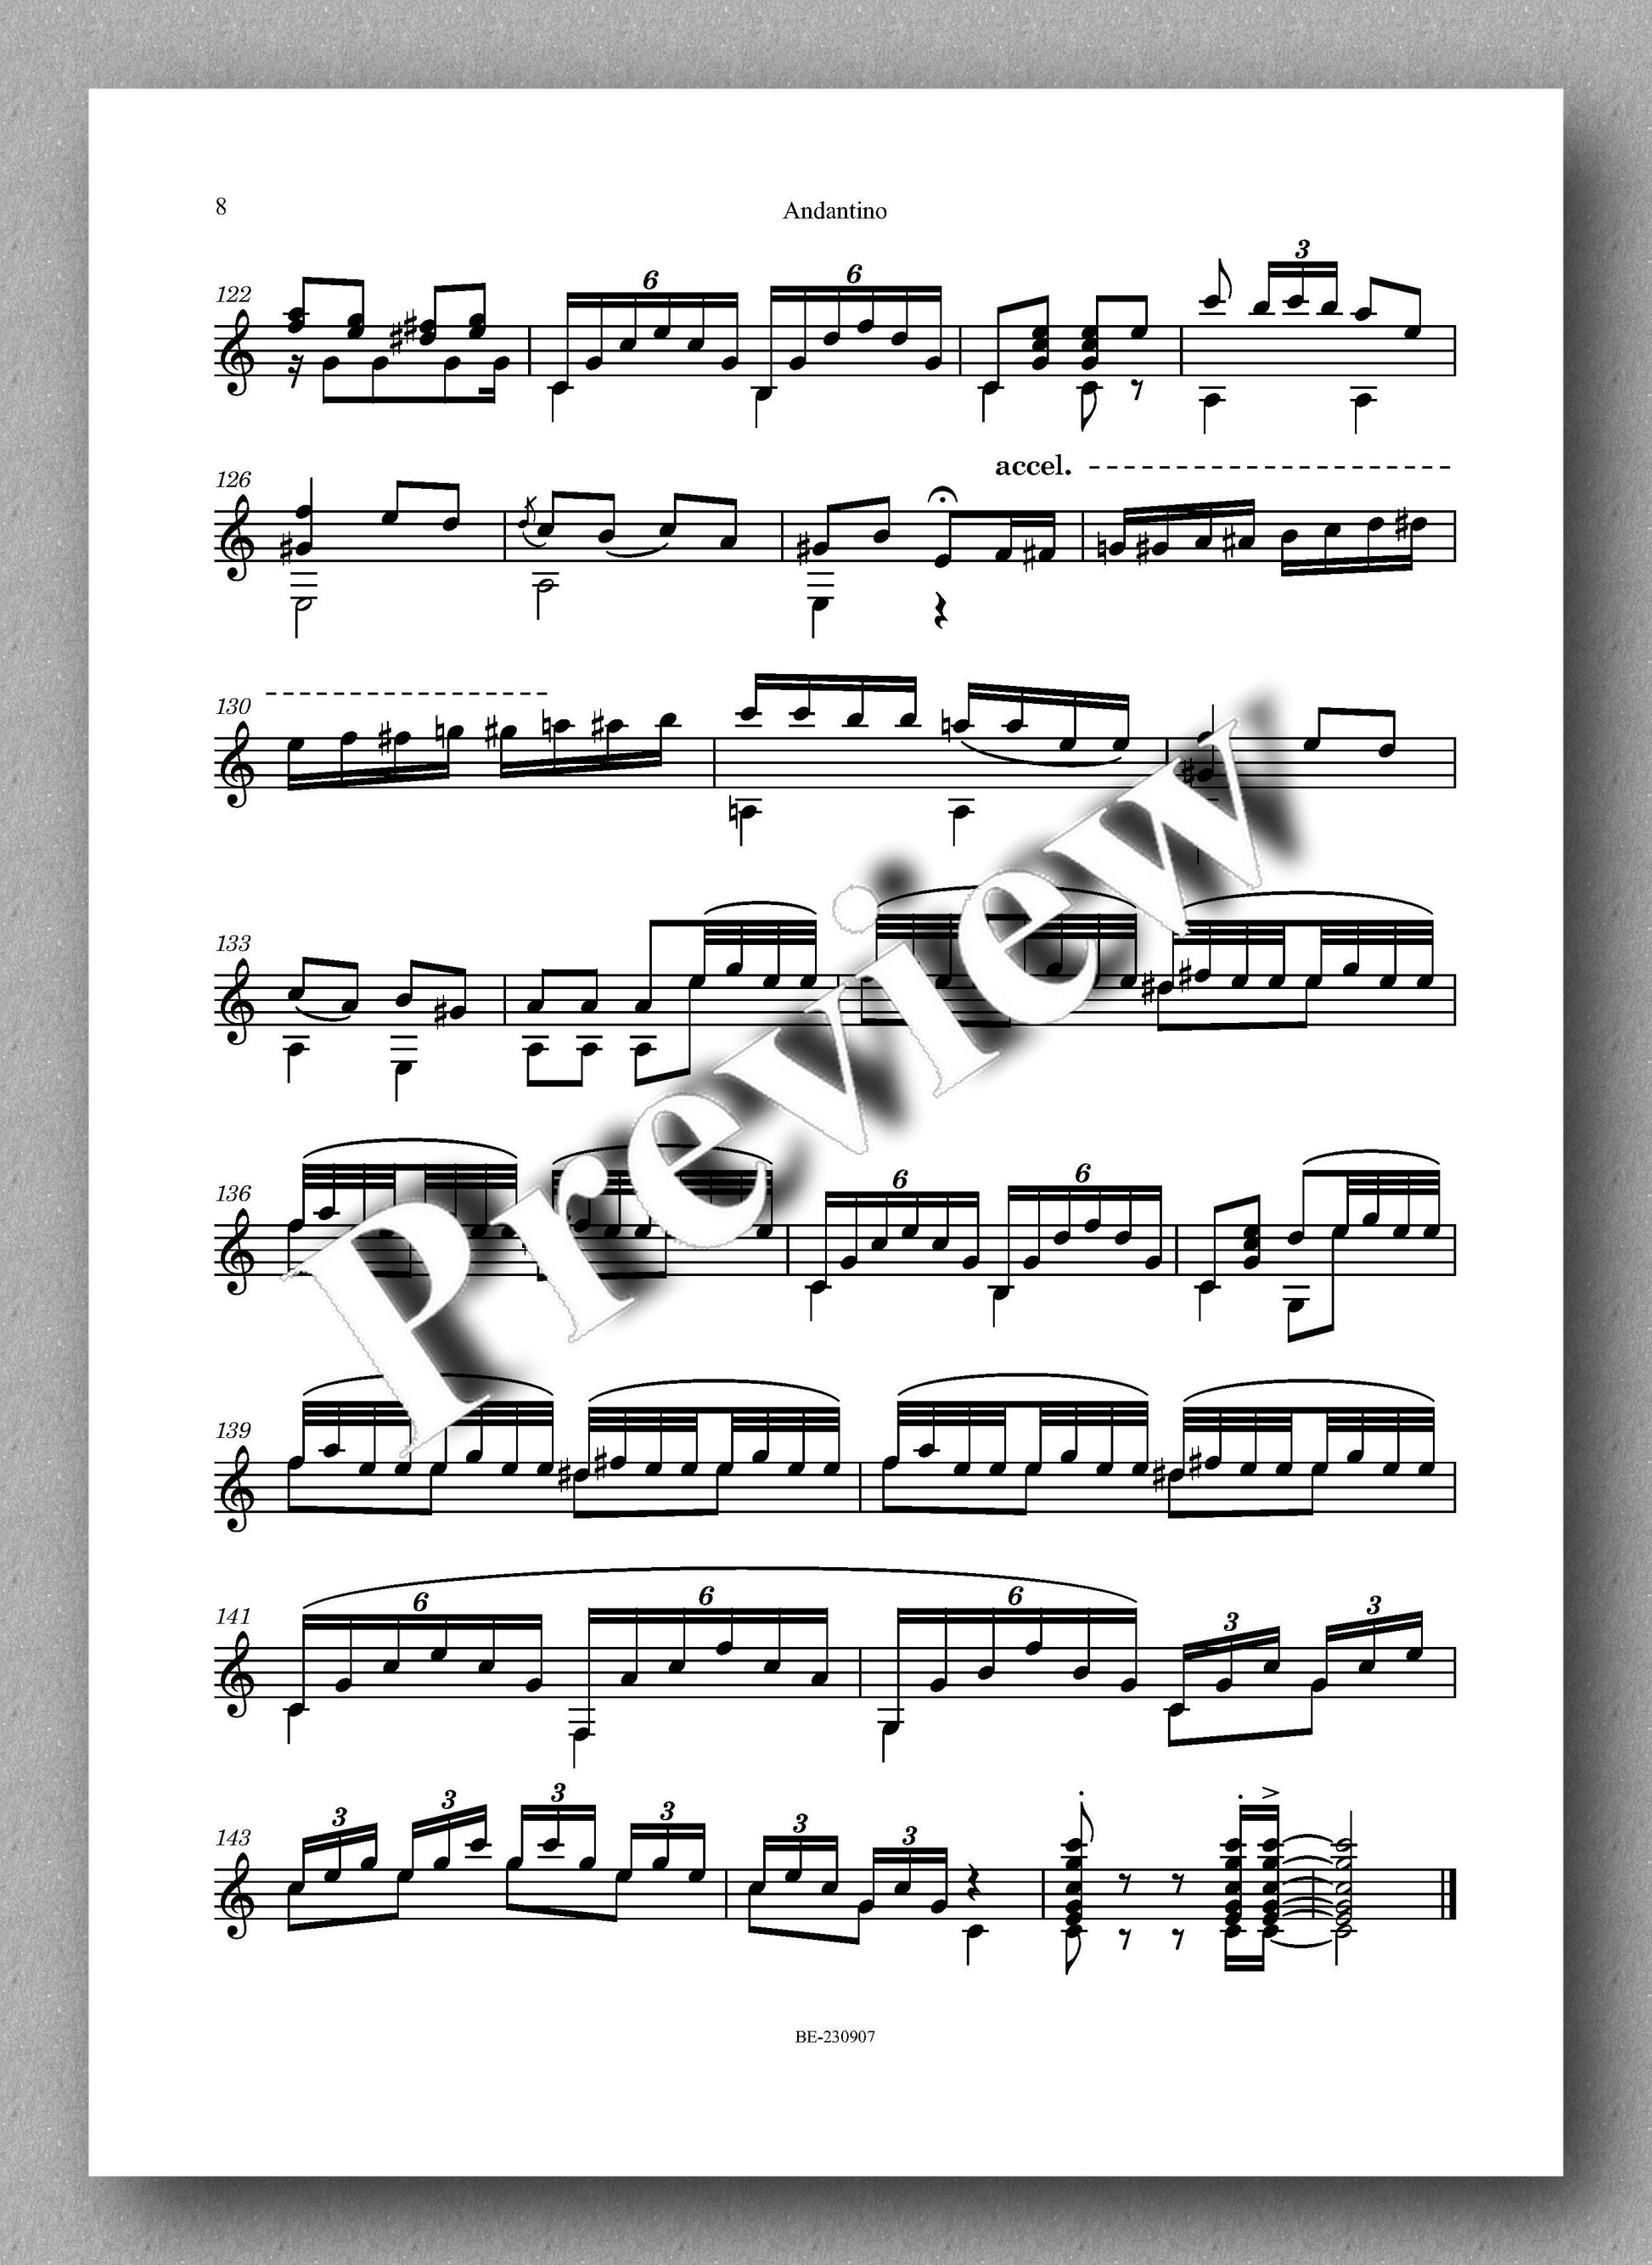 Nicolo Paganini, Andantino - preview of the music score 2